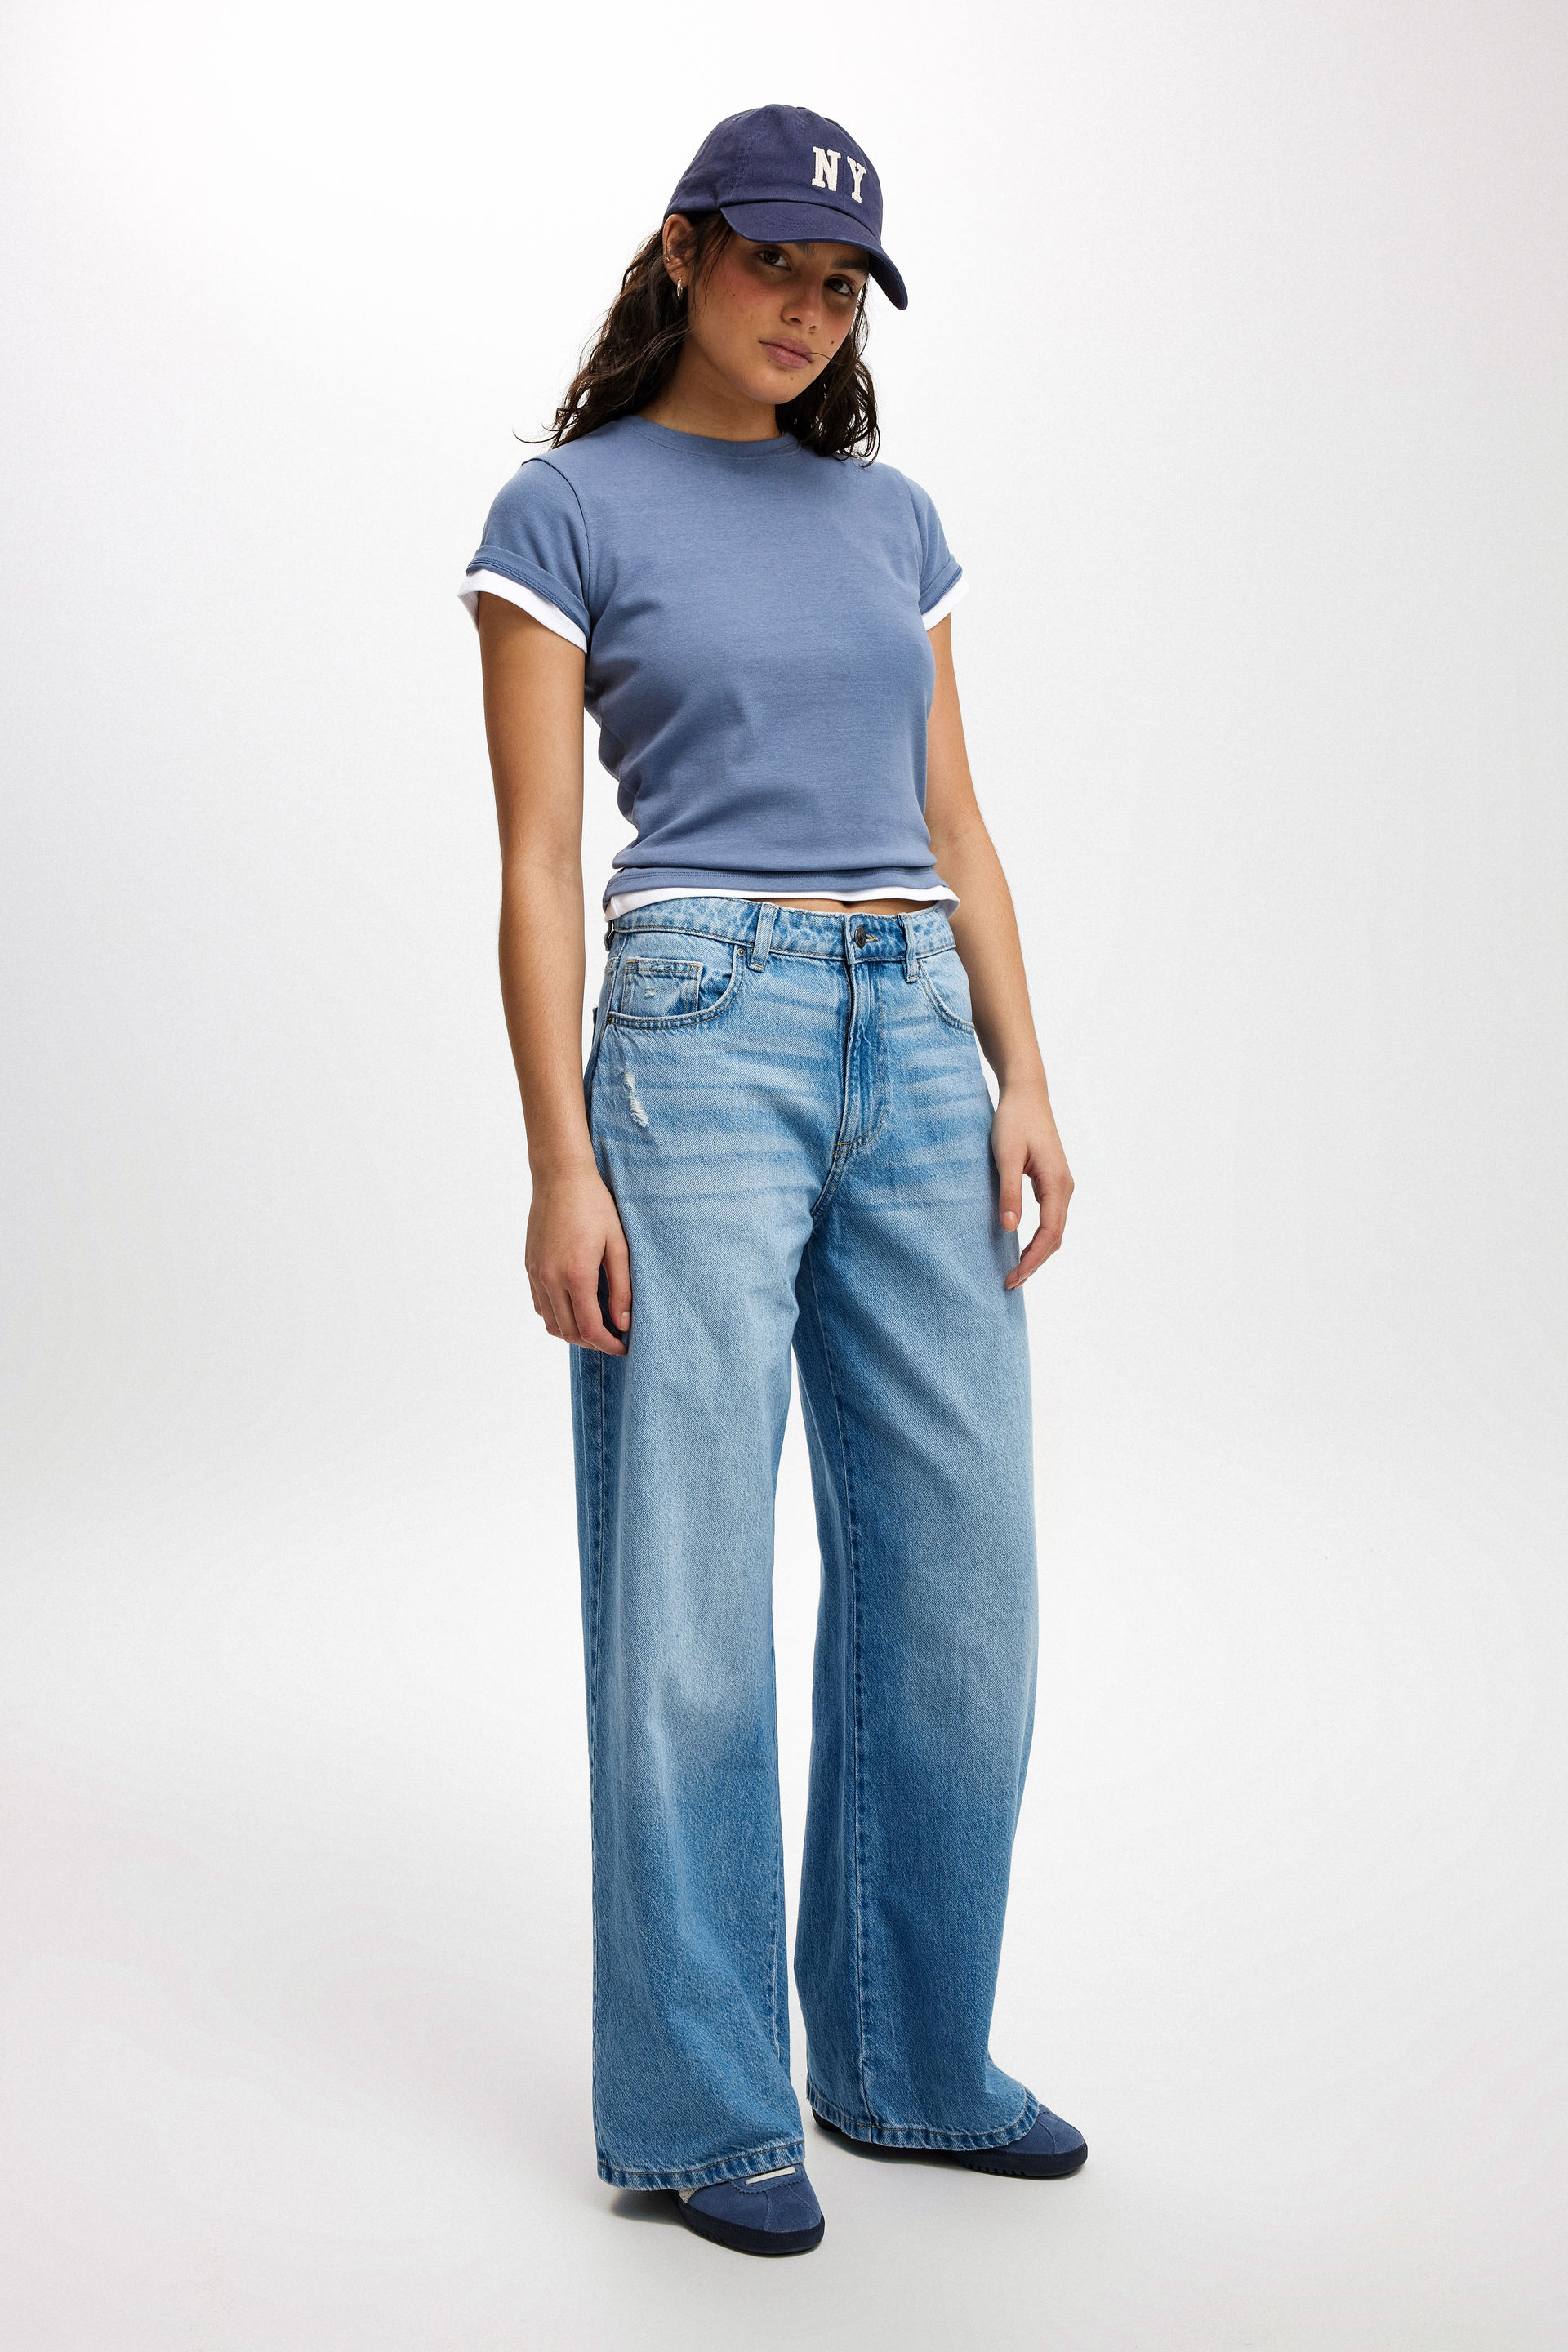 Cotton On Women - Relaxed Wide Jean - Breeze blue worn